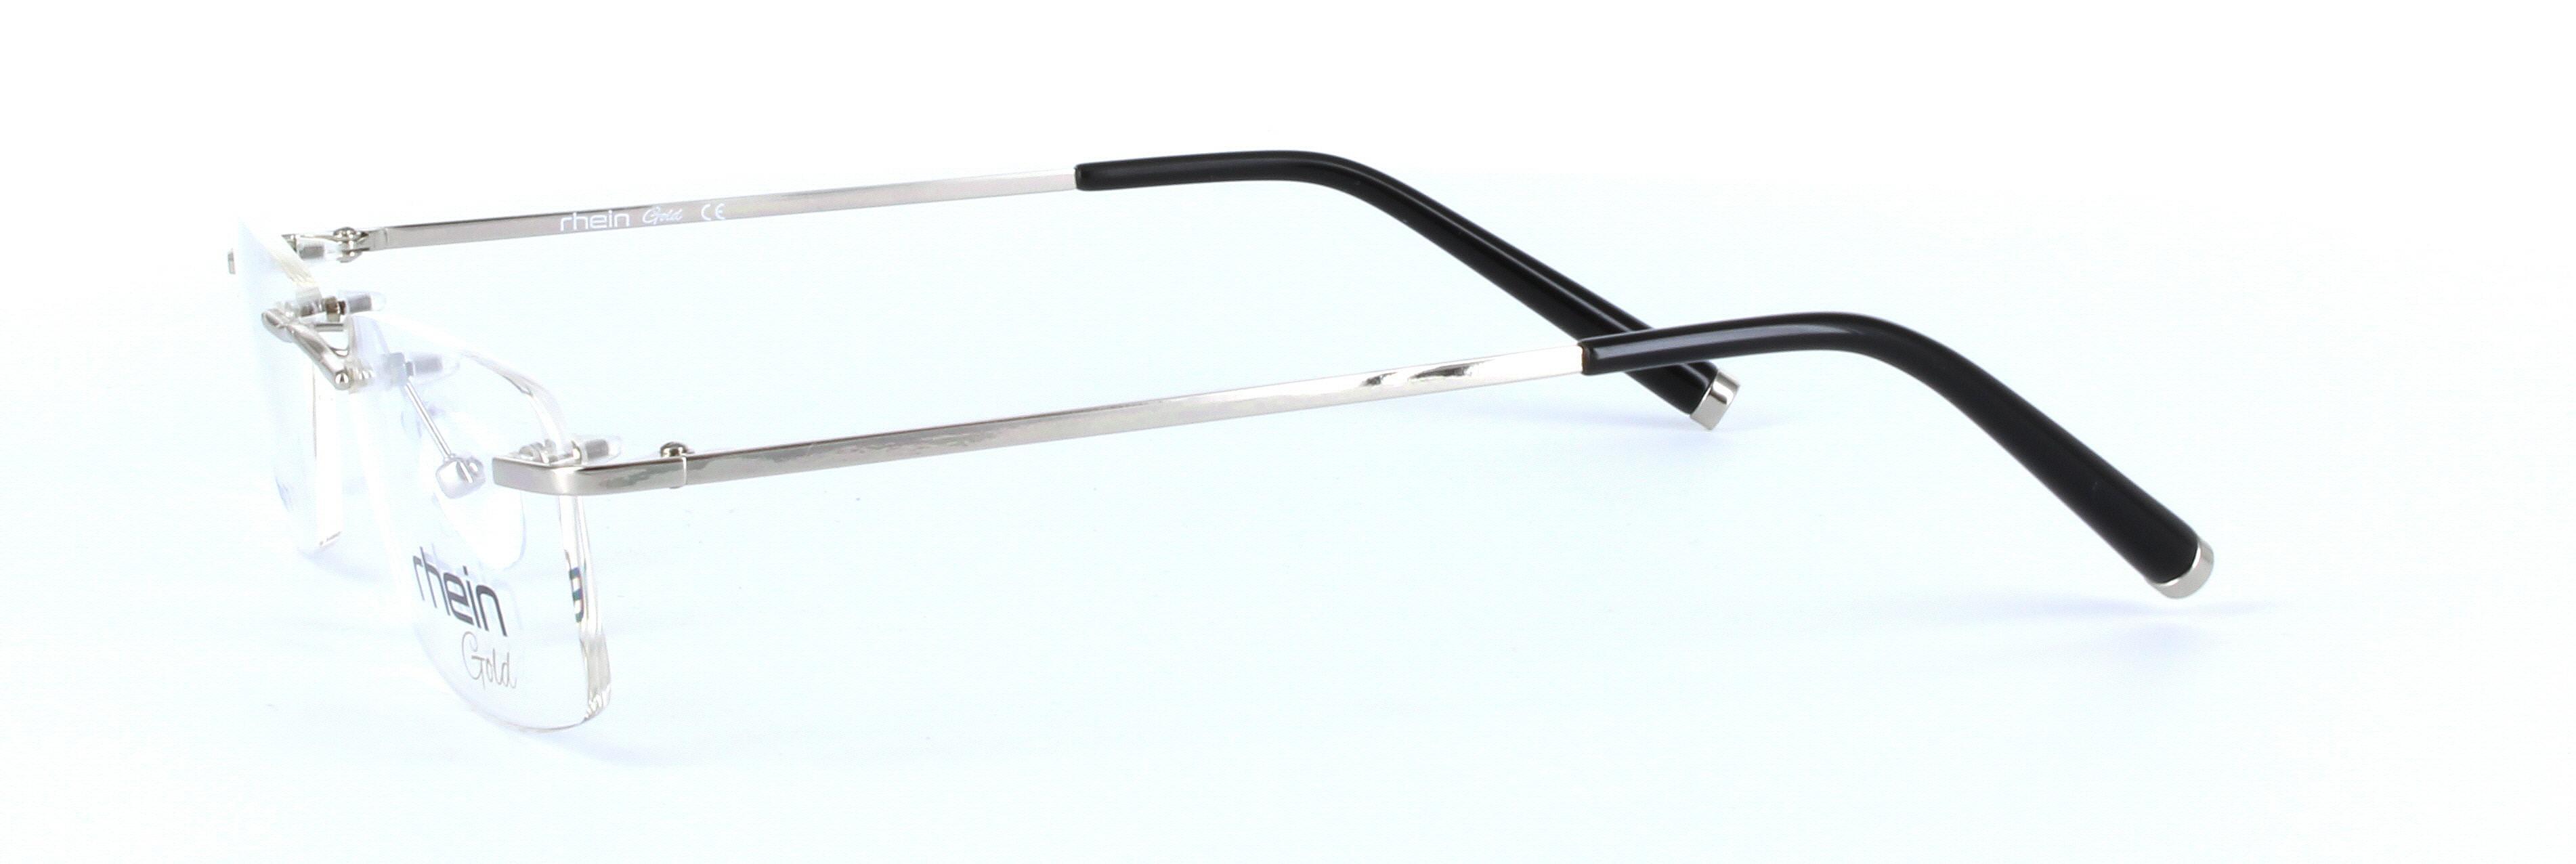 Silver Rimless Rectangular Titanium Glasses Palmer Titanium - Image View 2